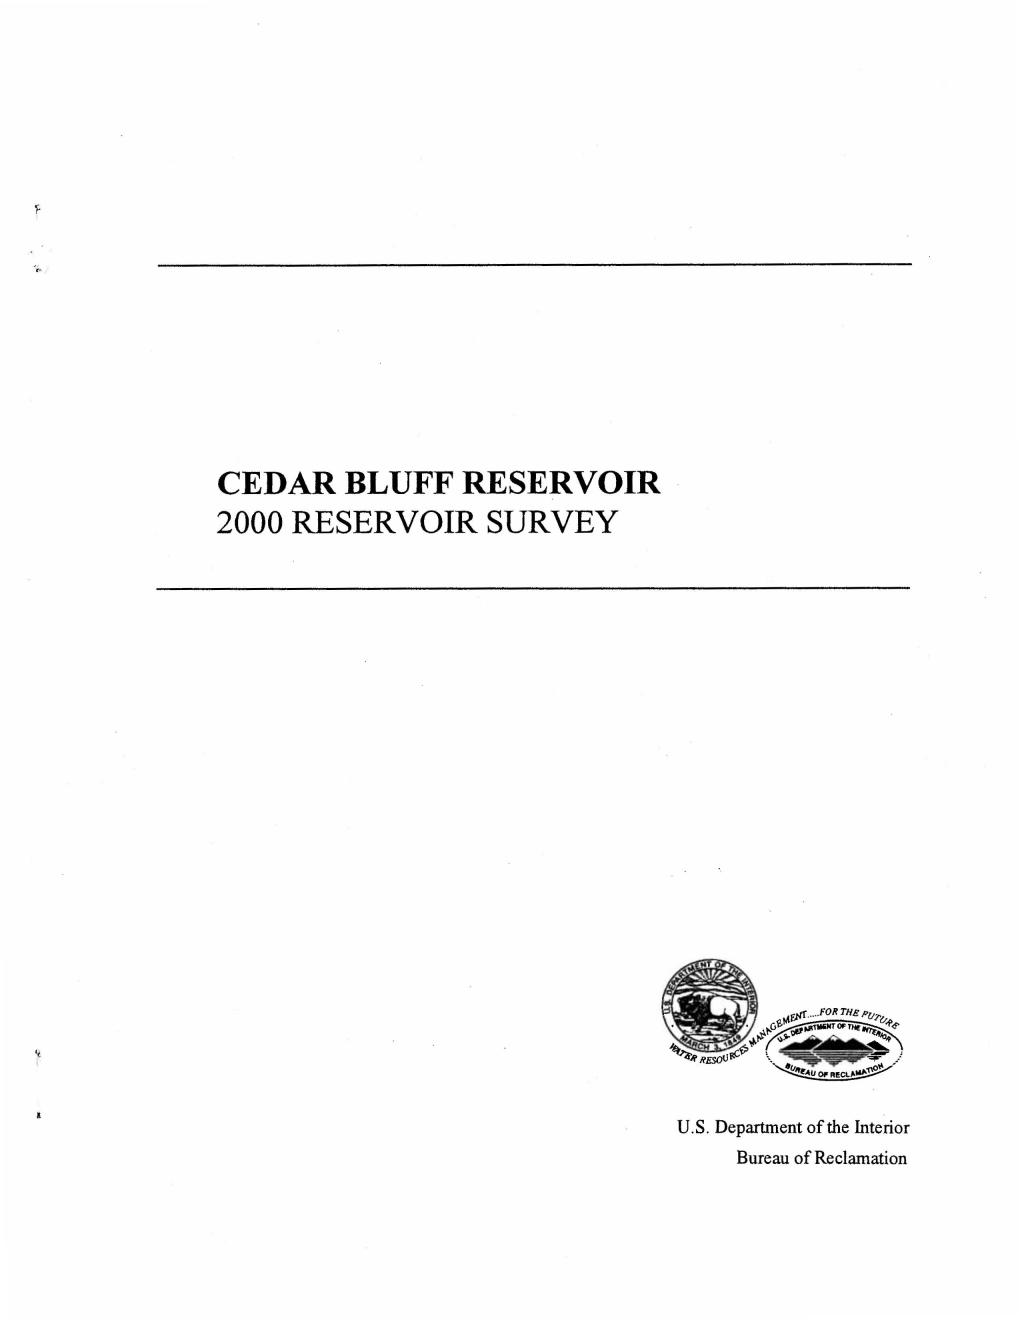 Cedar Bluff Reservoir 2000 Reservoir Survey